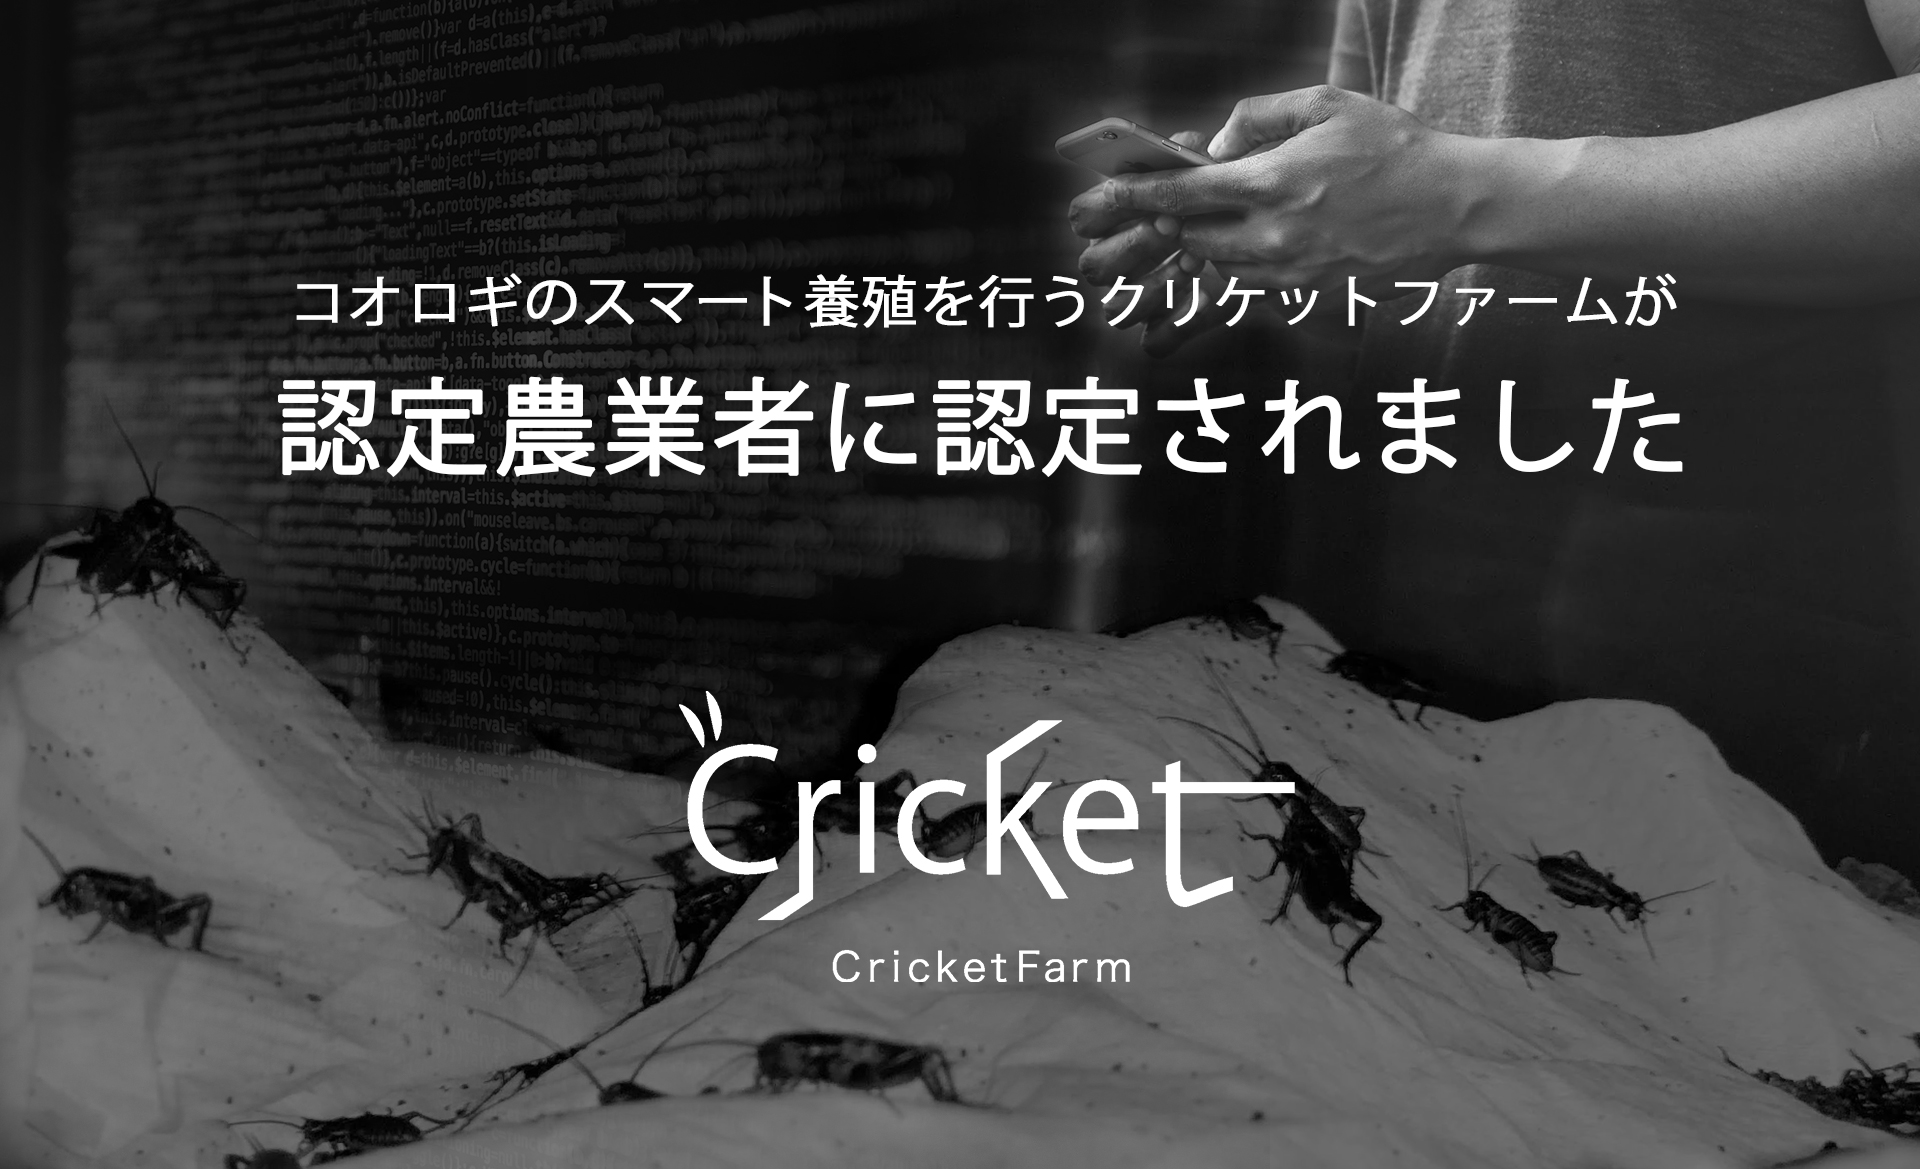 コオロギ養殖のクリケットファームが、長野県茅野市から認定農業者として認定されました